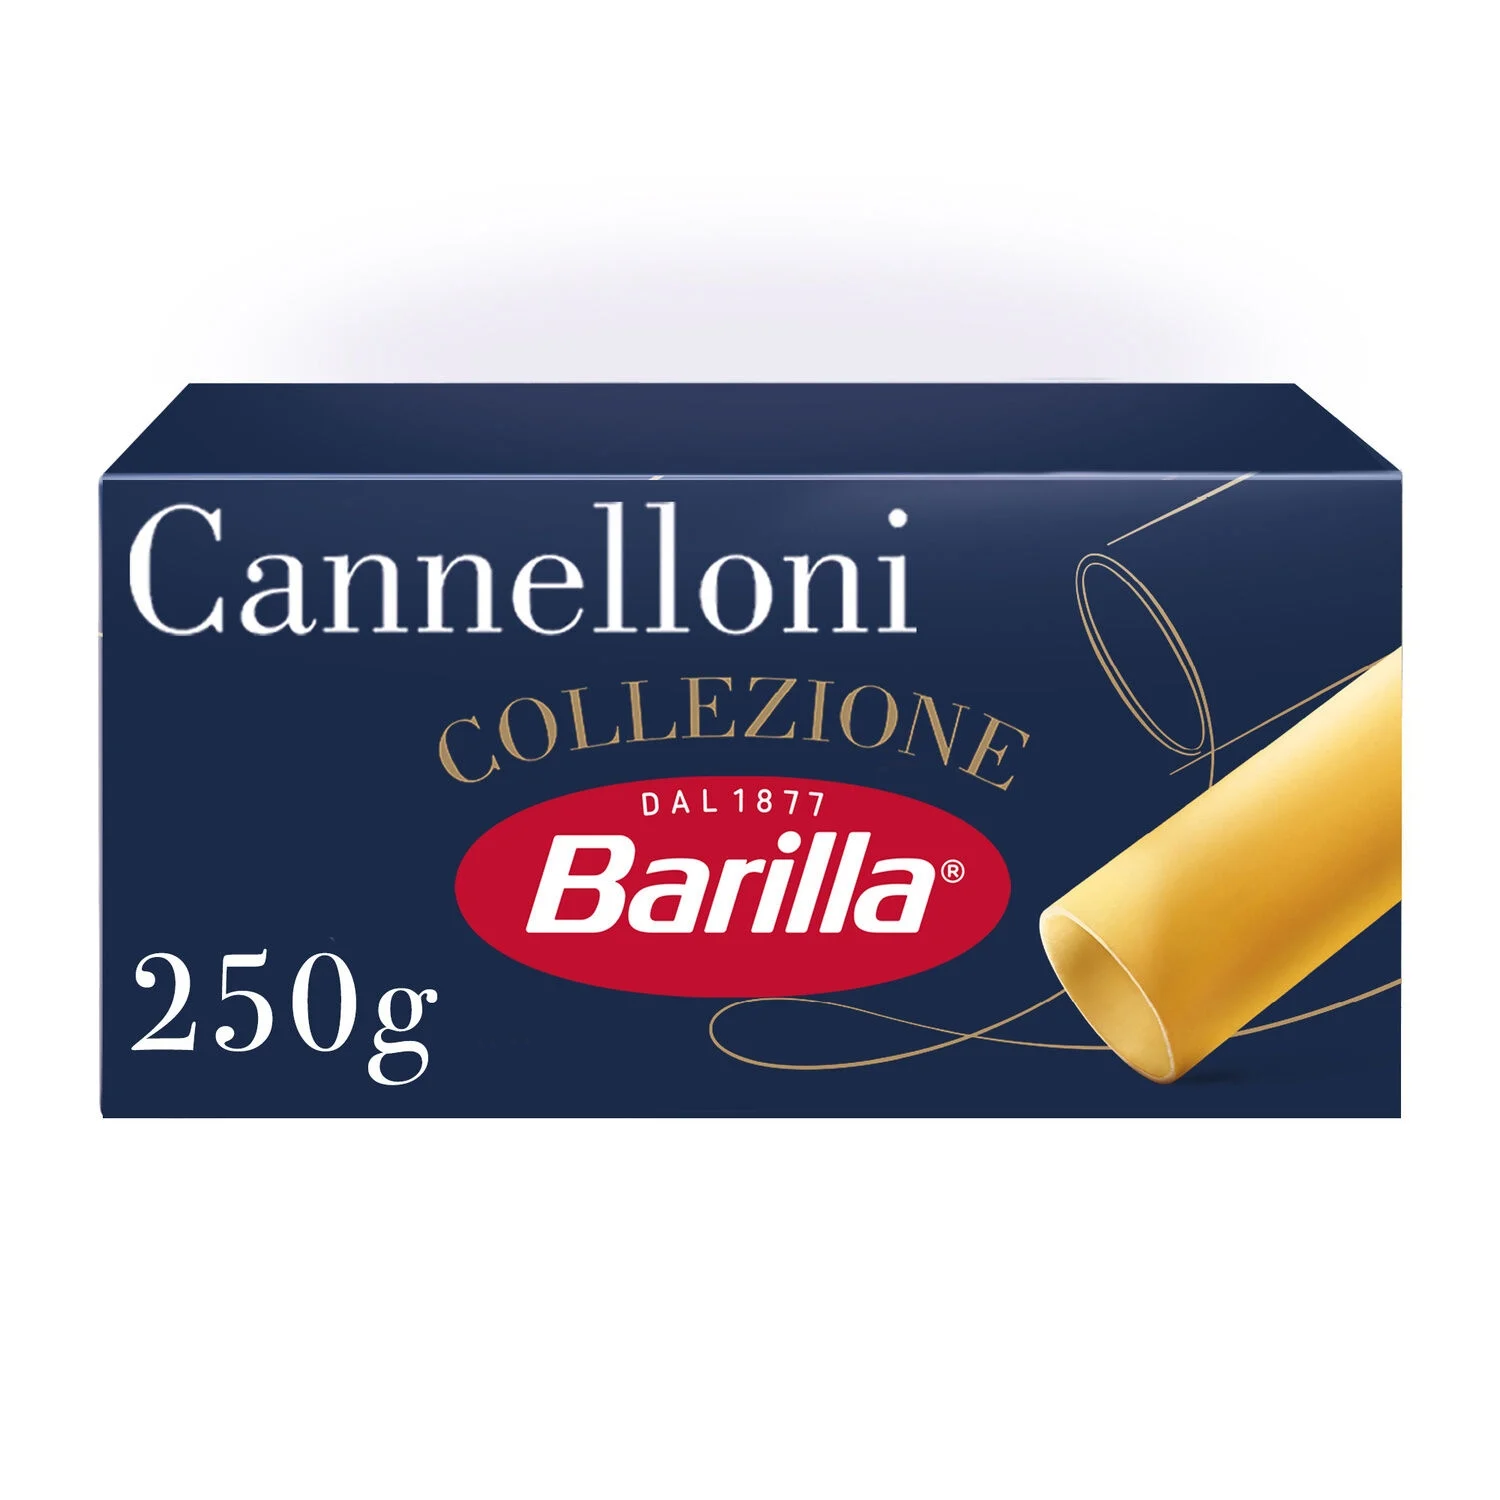 Pâtes Cannelloni Collezione 250g - Barilla